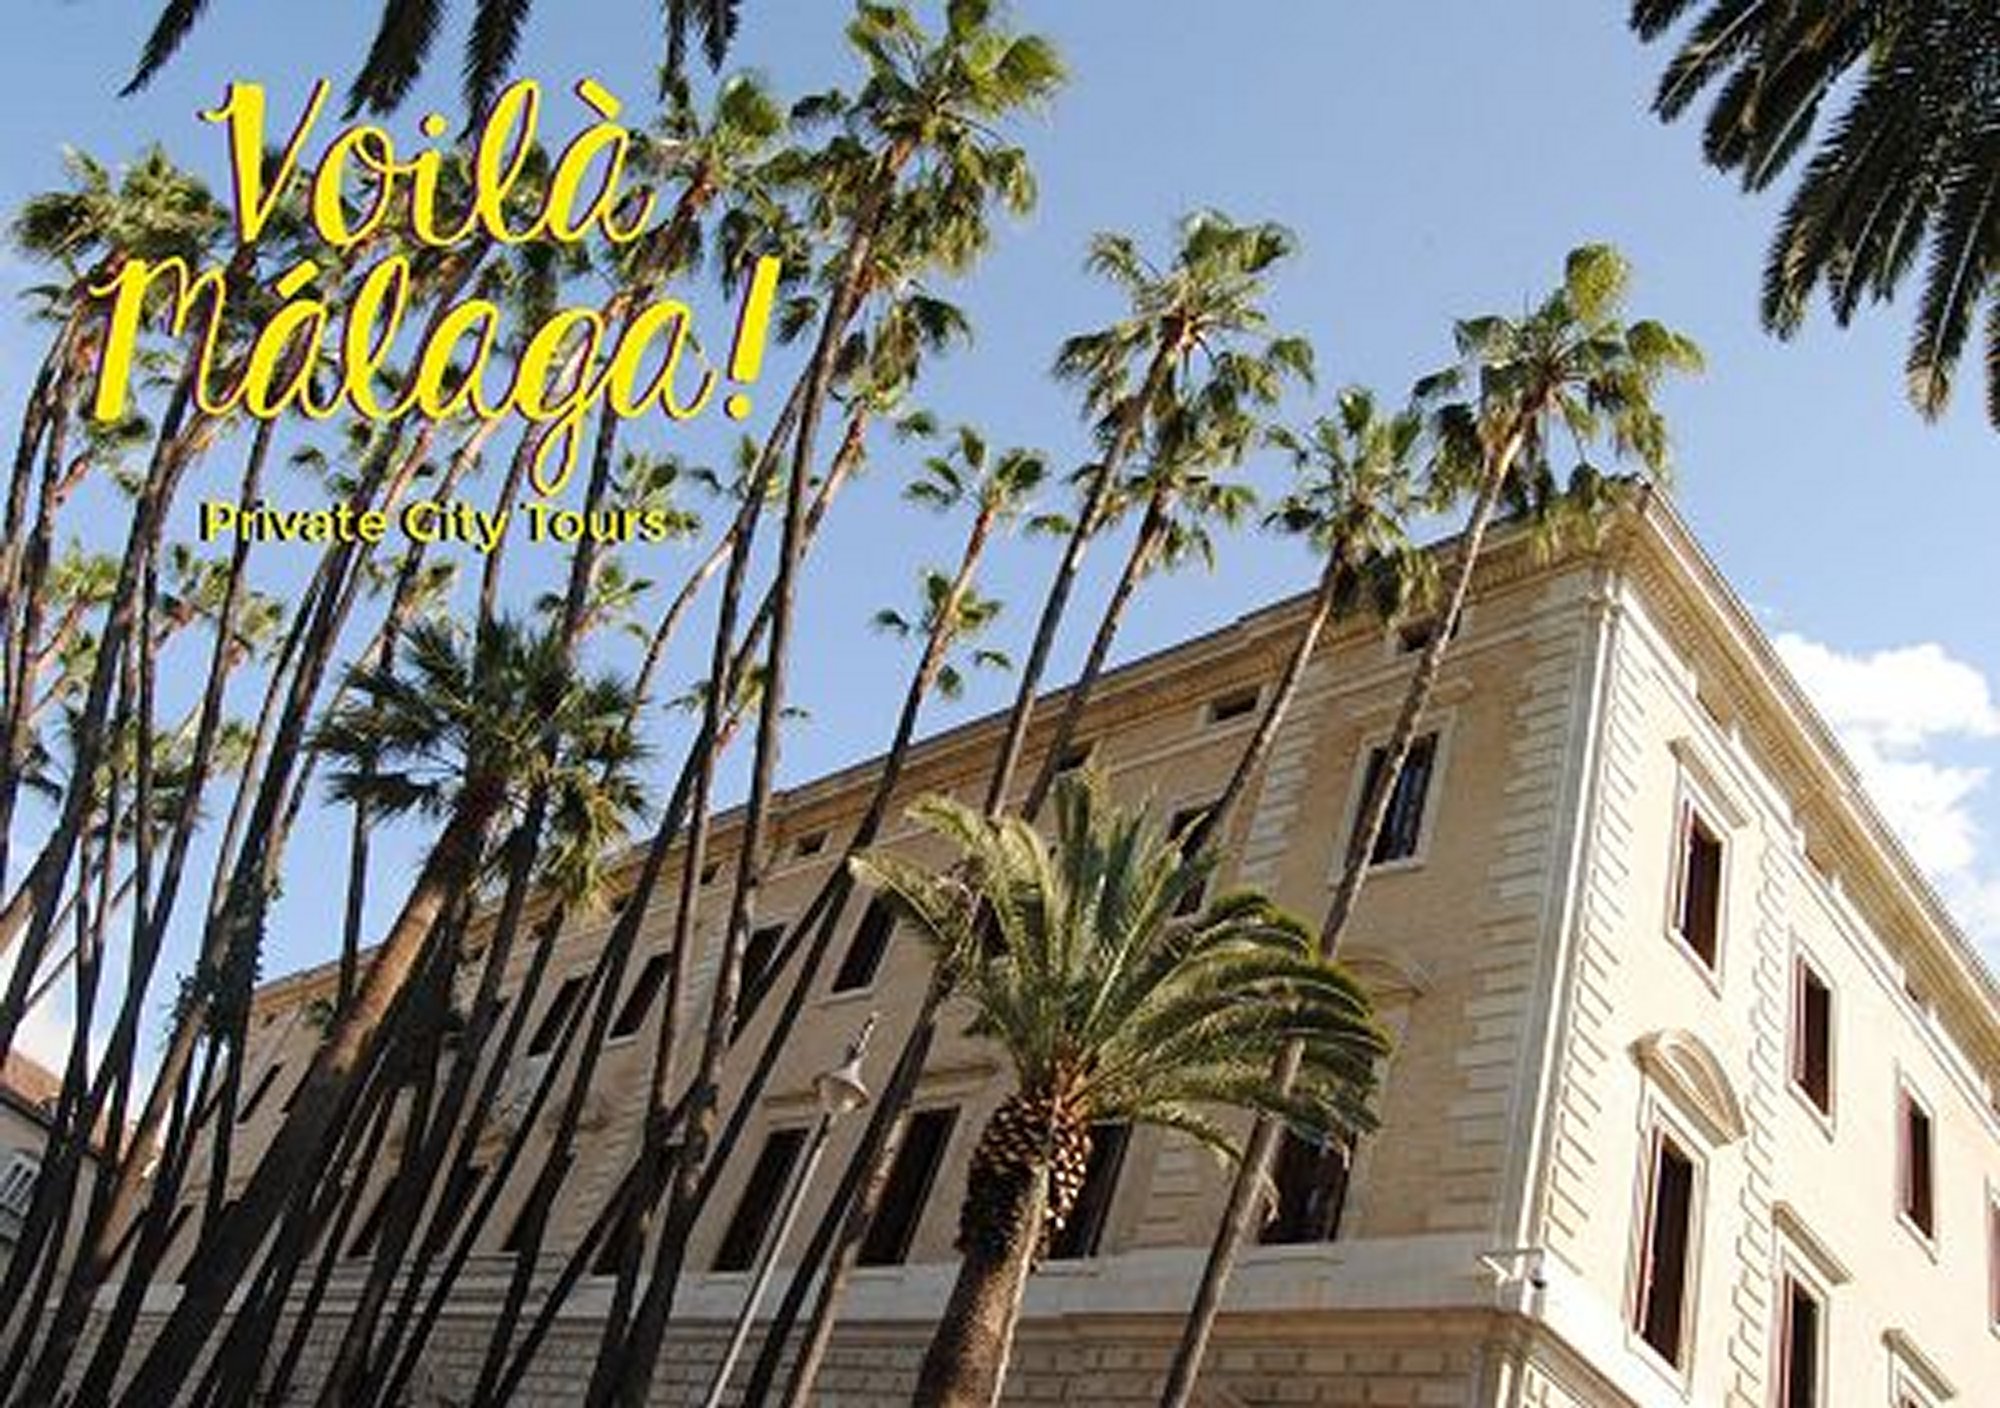 réservations réserver visites guidées tours billets visiter Tour Culturel Le Grand Tour à Málaga